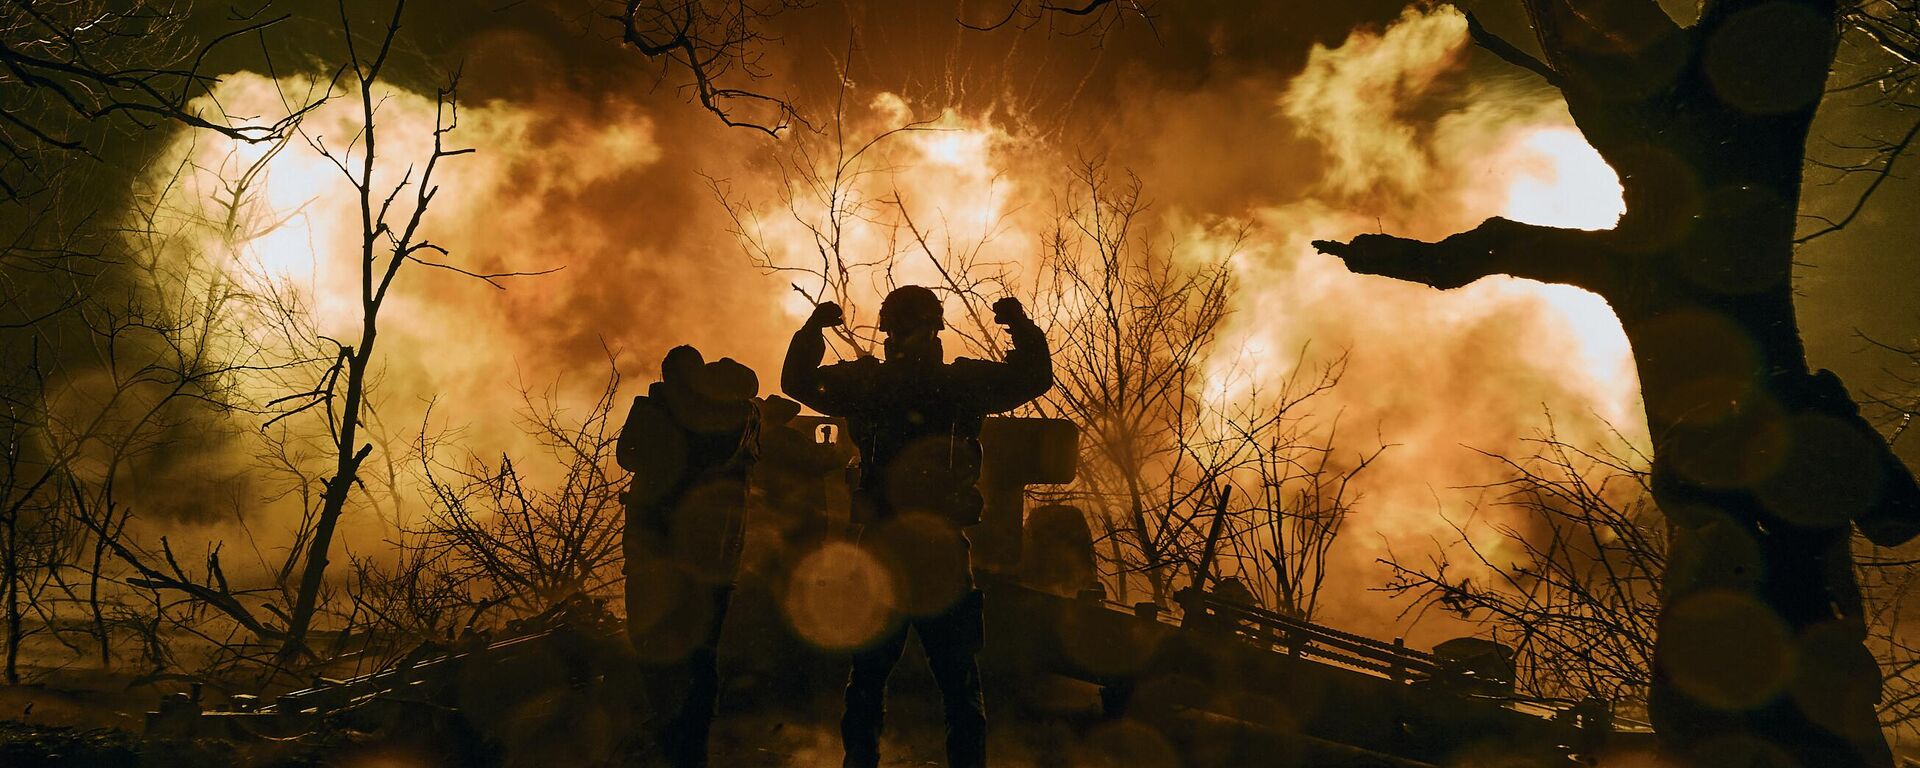  جنود أوكرانيون يطلقون نيران المدفعية على مواقع روسية بالقرب من باخموت في منطقة دونيتسك، 20 نوفمبر 2022.  - سبوتنيك عربي, 1920, 06.03.2023